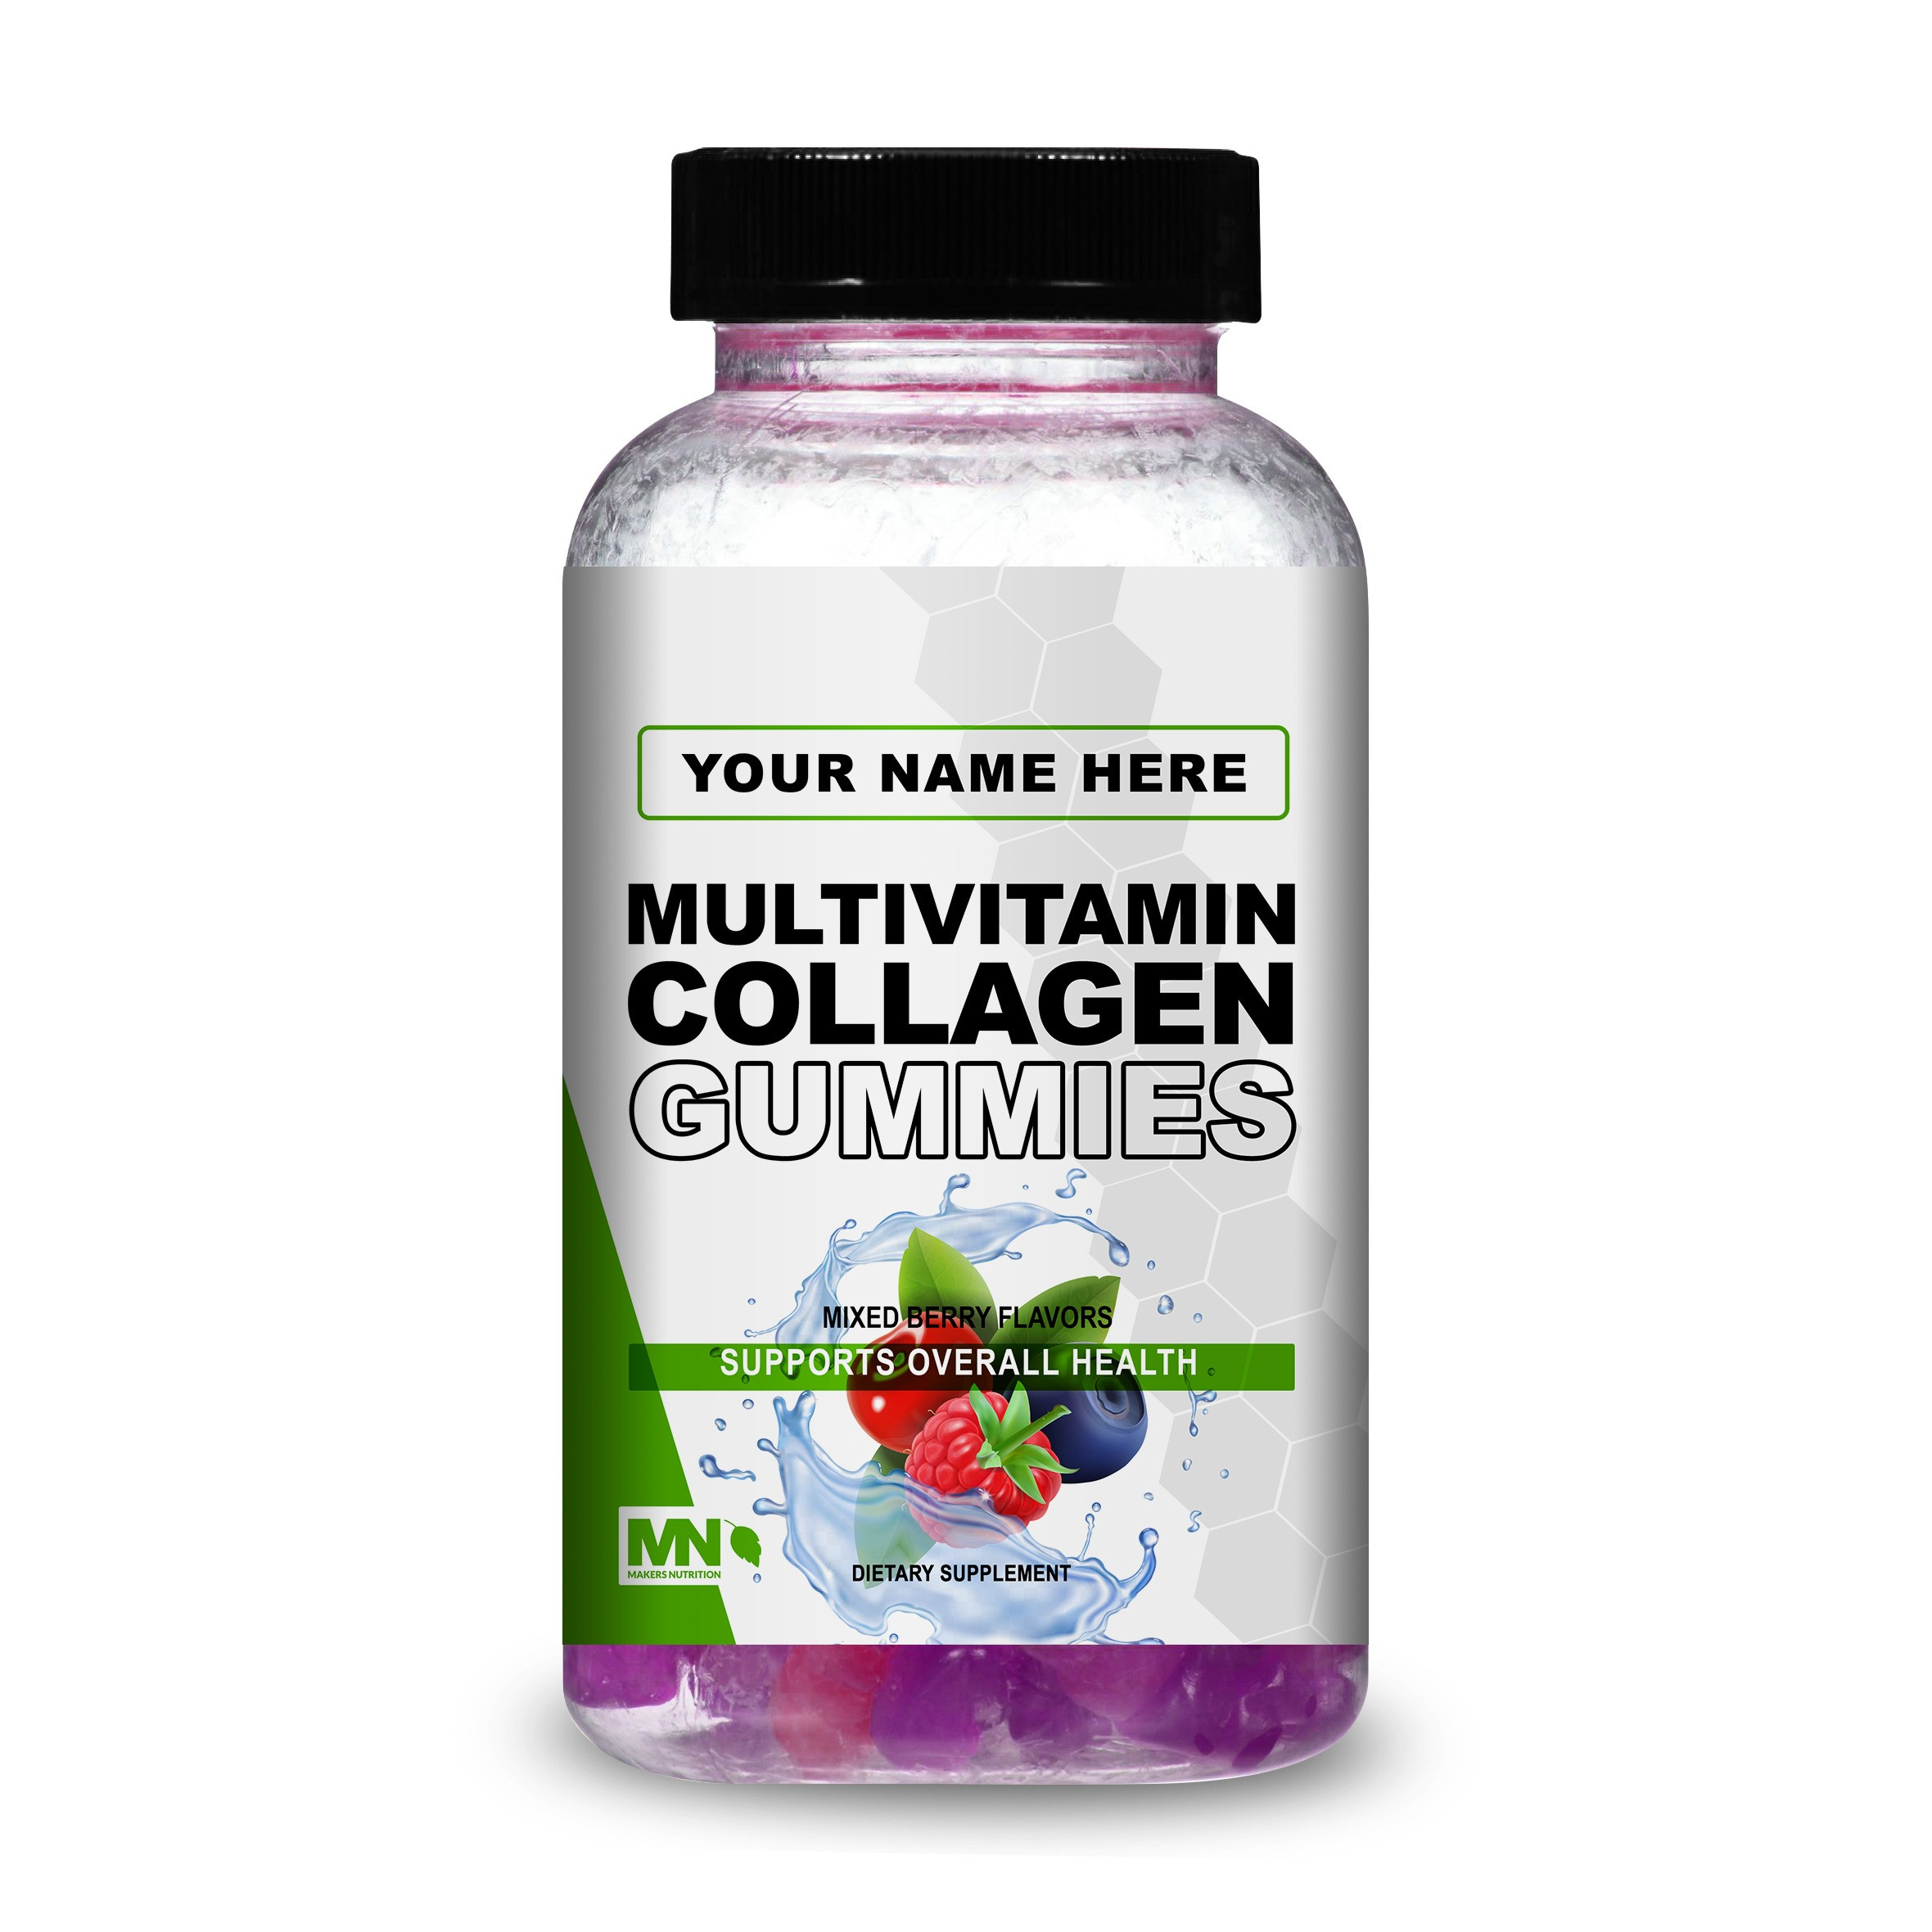 Multivitamin Collagen Gummies